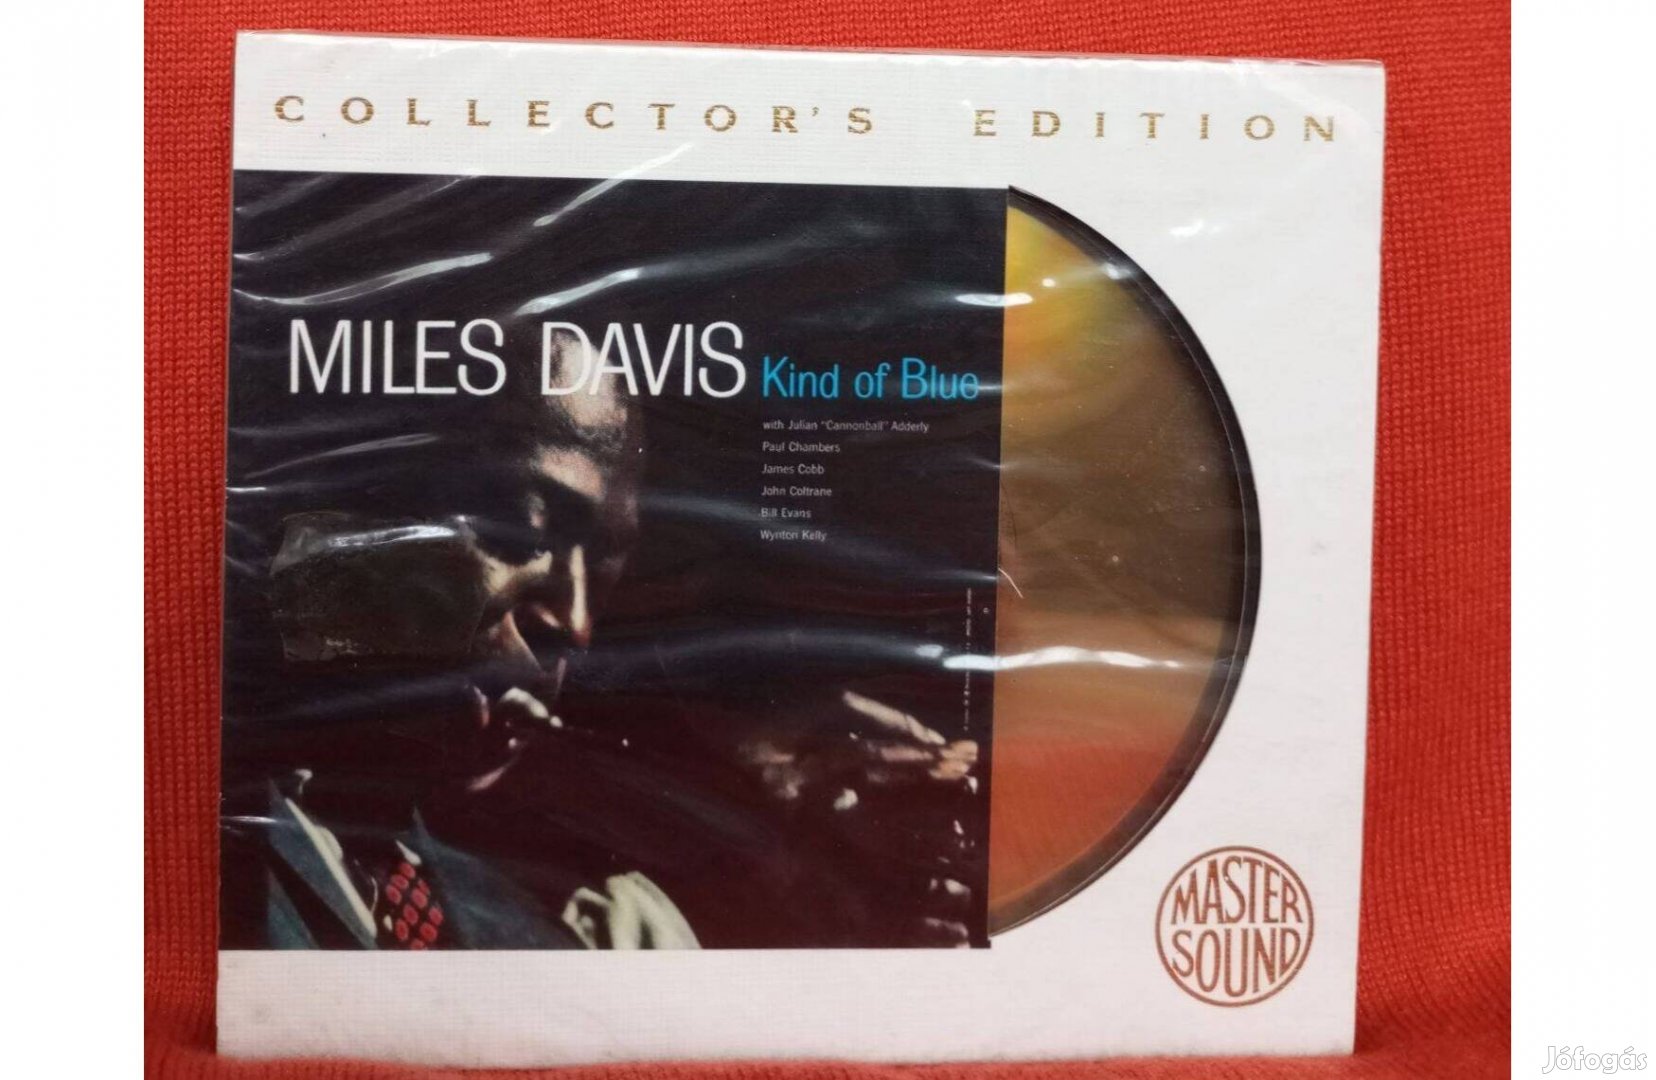 Miles Davis - Kind of Blue CD. /új,fóliás/Gold Disc, Collector's Editi